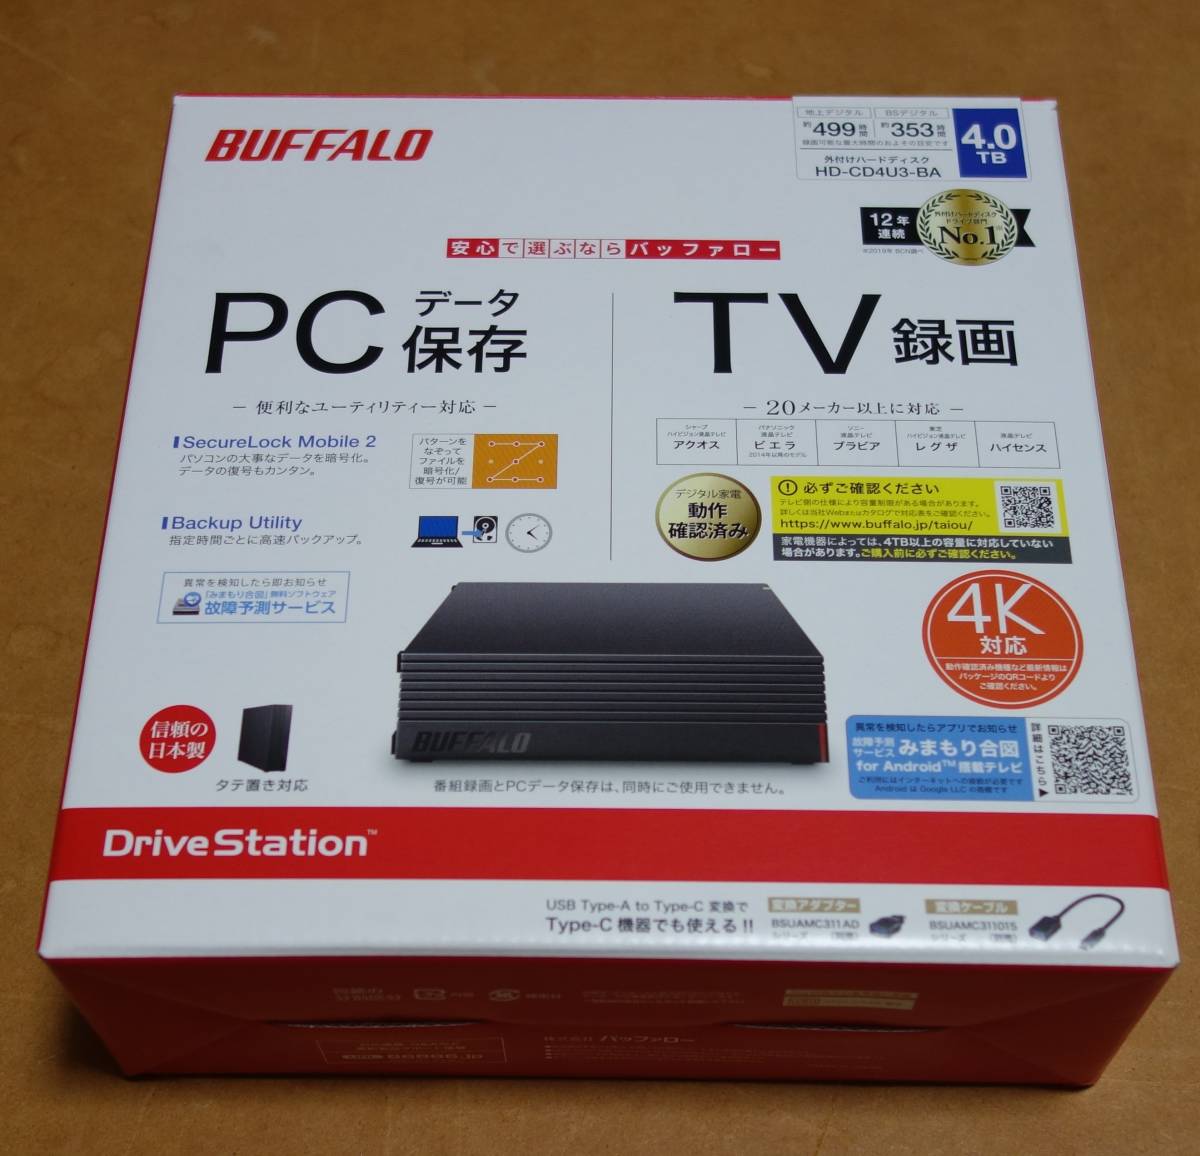 HD-CD4U3-BA 外付けハードディスク - 映像機器